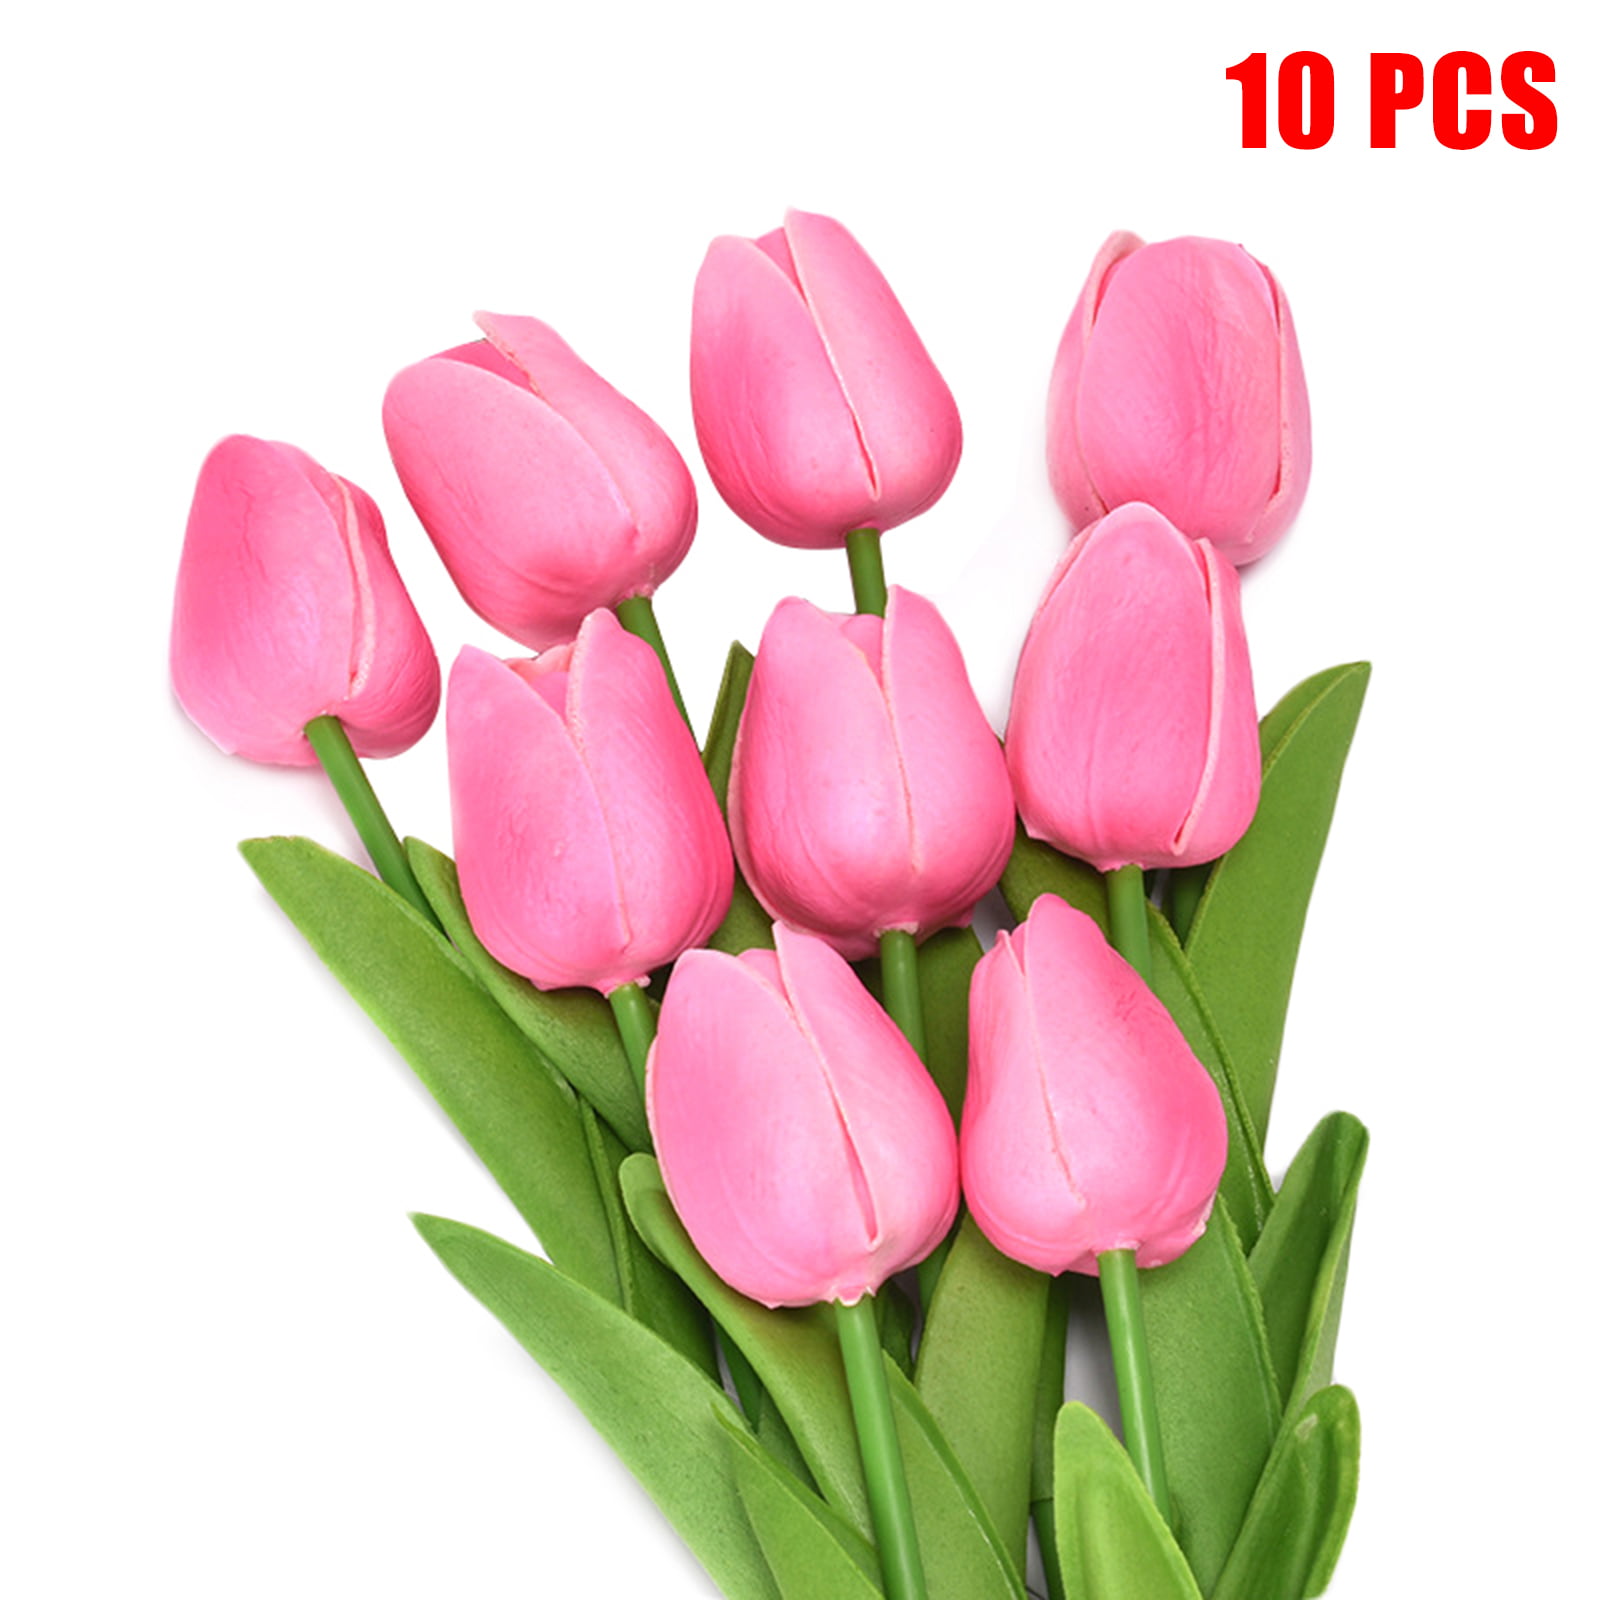 50pk Metallic Pink Flower Wires 20 Gauge 